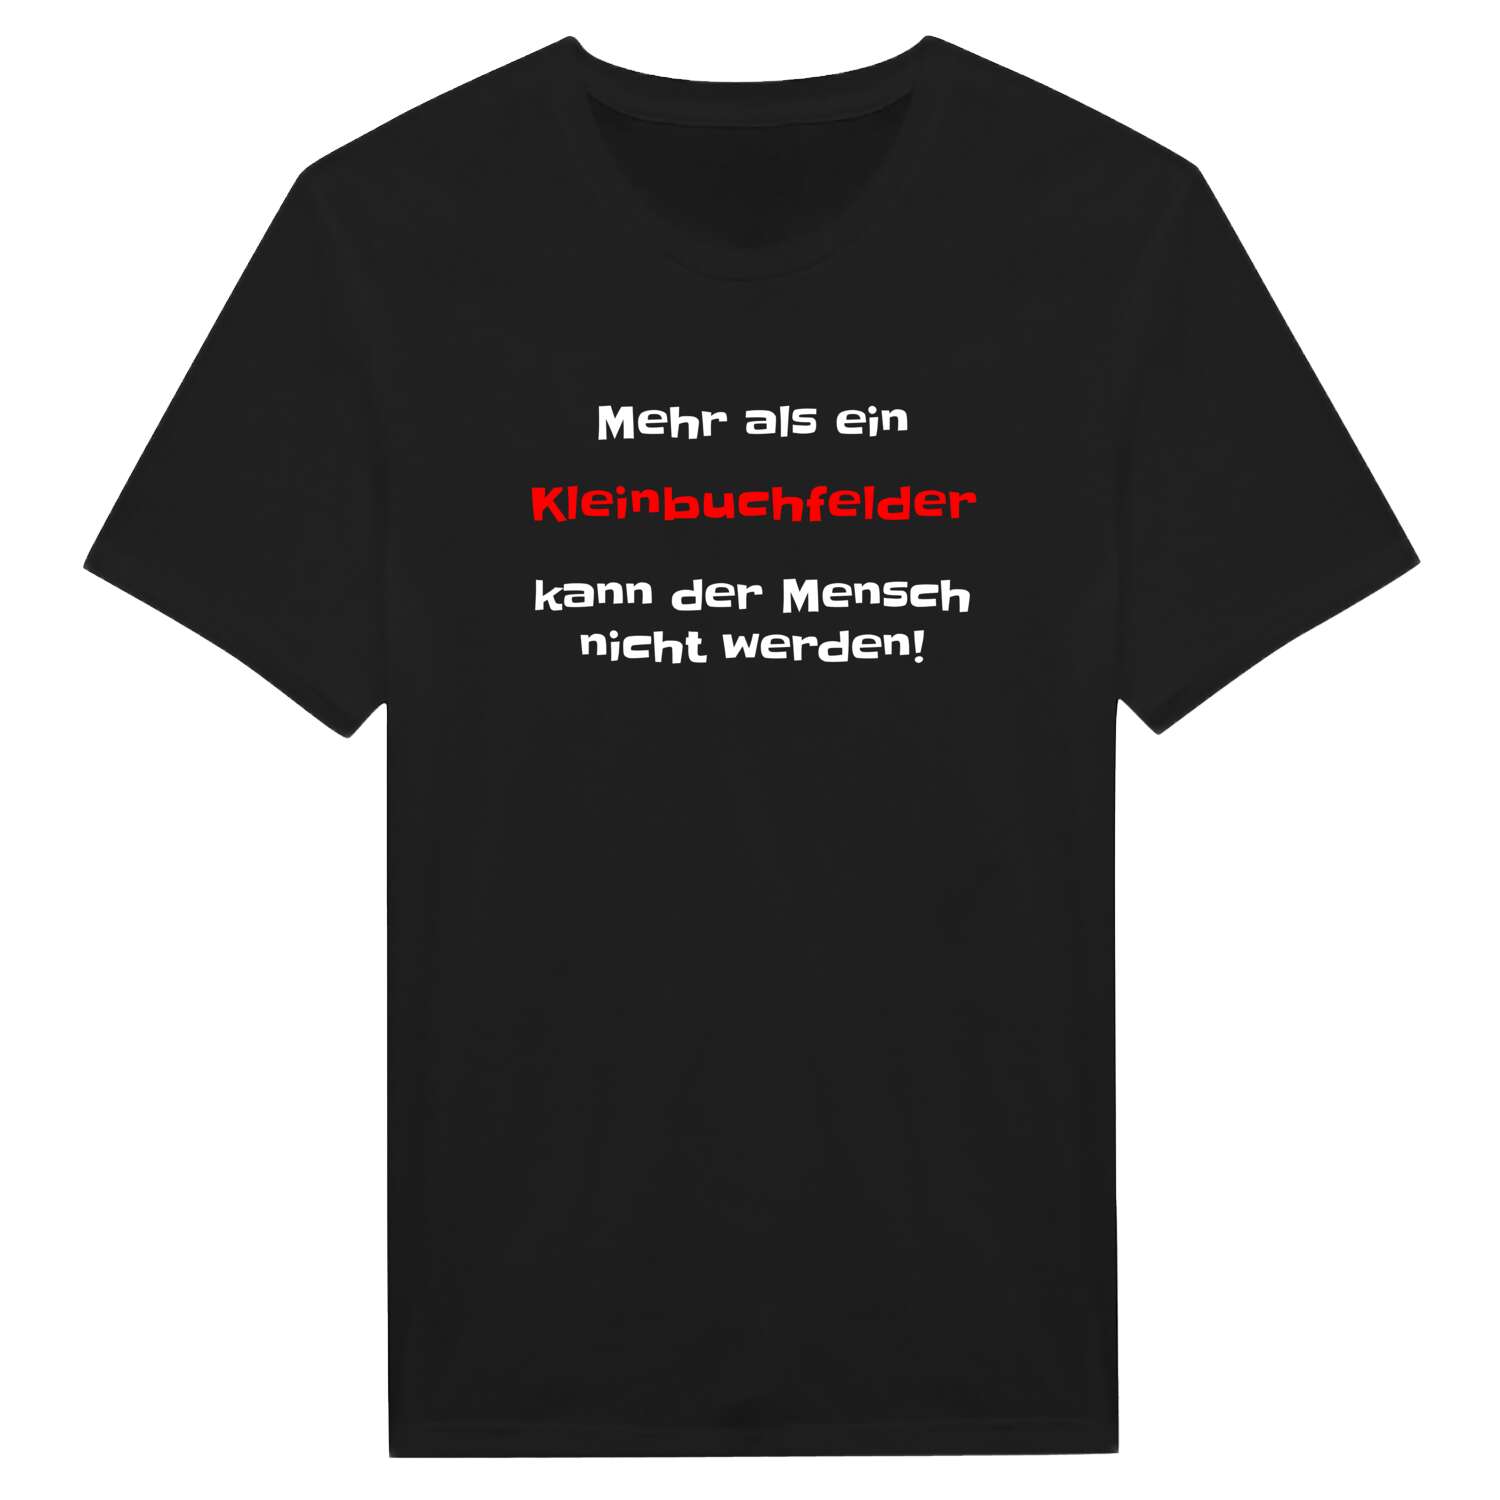 Kleinbuchfeld T-Shirt »Mehr als ein«